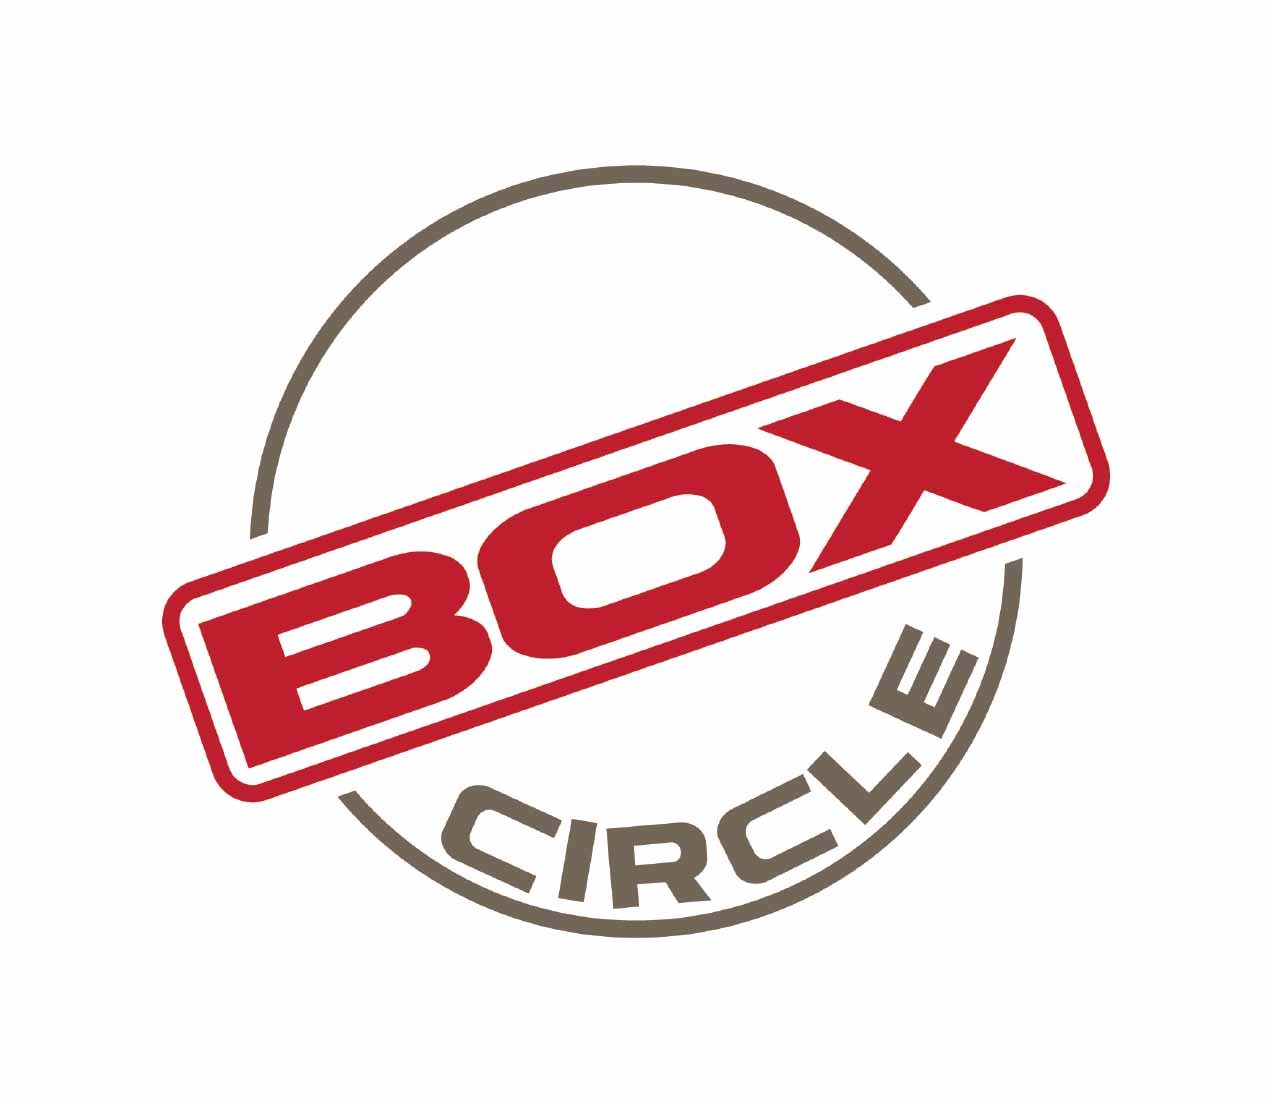 Box Circle